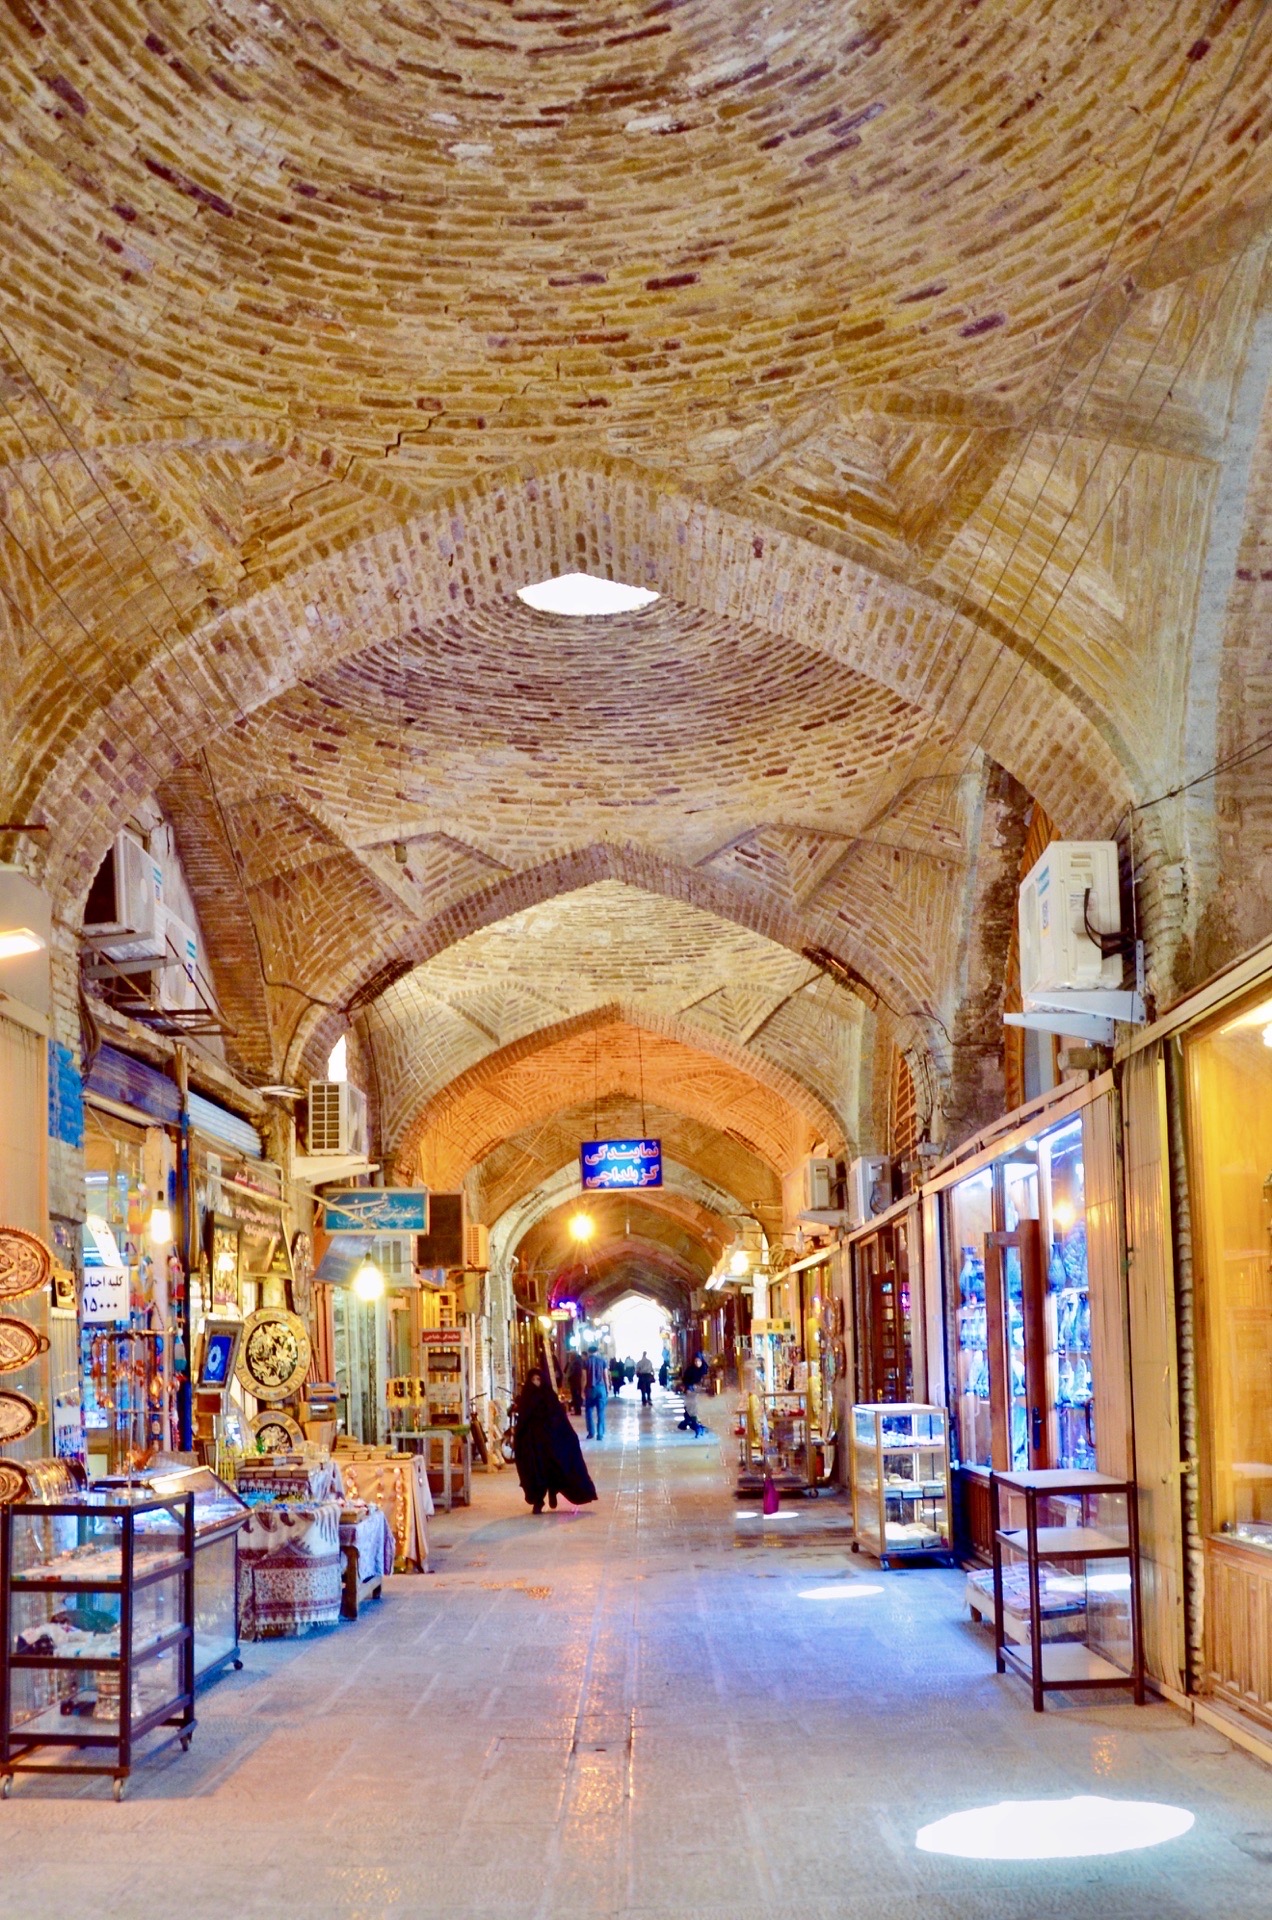 伊玛目的大巴扎。是伊朗最大的大巴扎之一。在广场的右边。两边长长的骑楼。拱廊中间的通道，顶上投下的光，